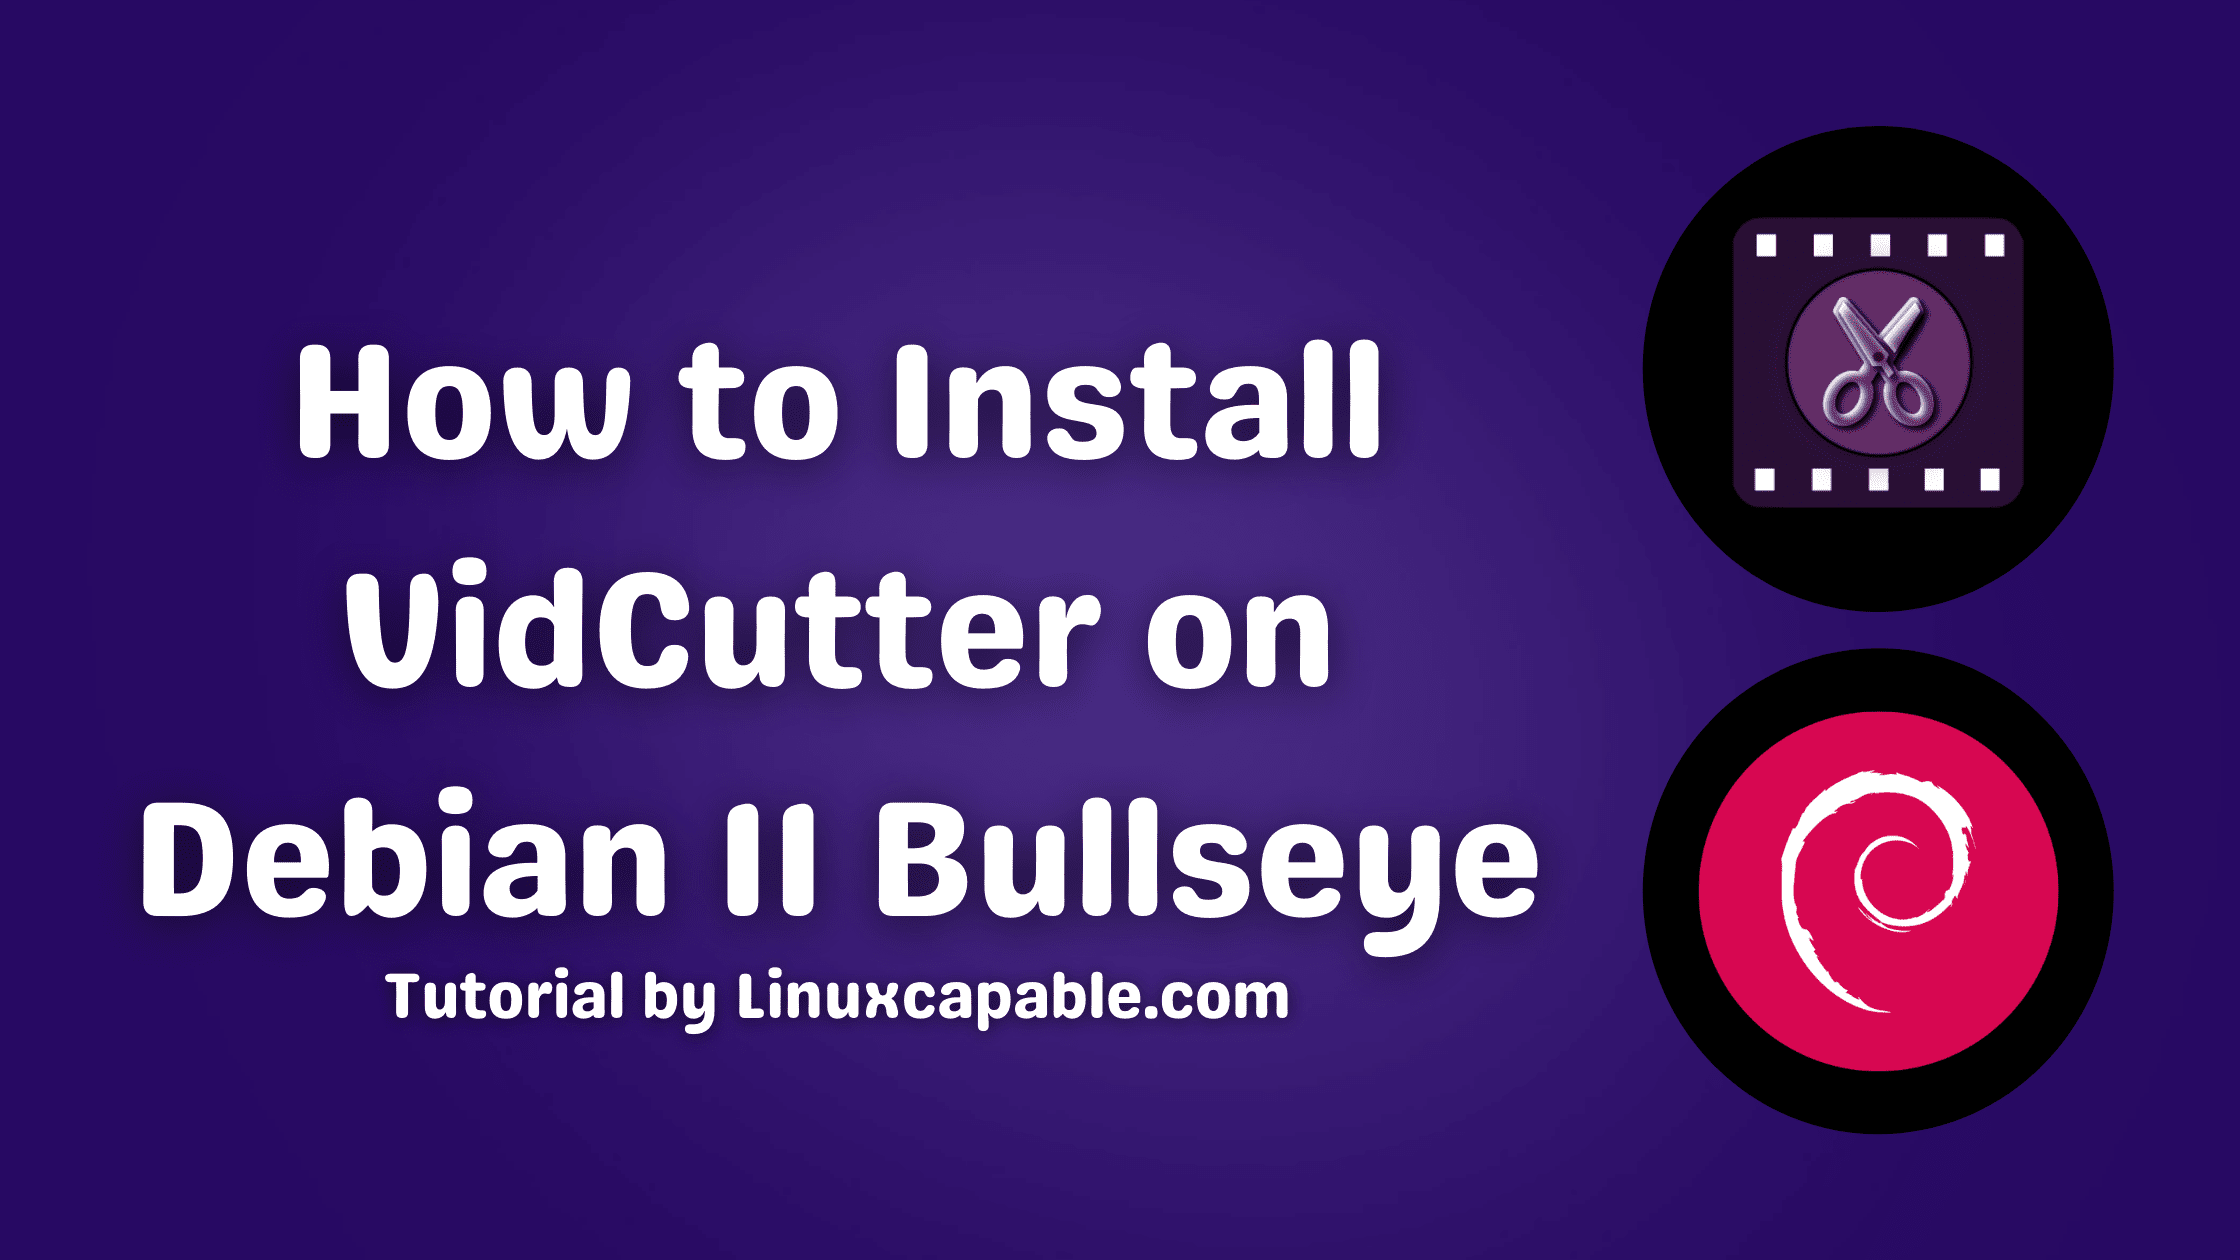 How to Install VidCutter on Debian 11 Bullseye